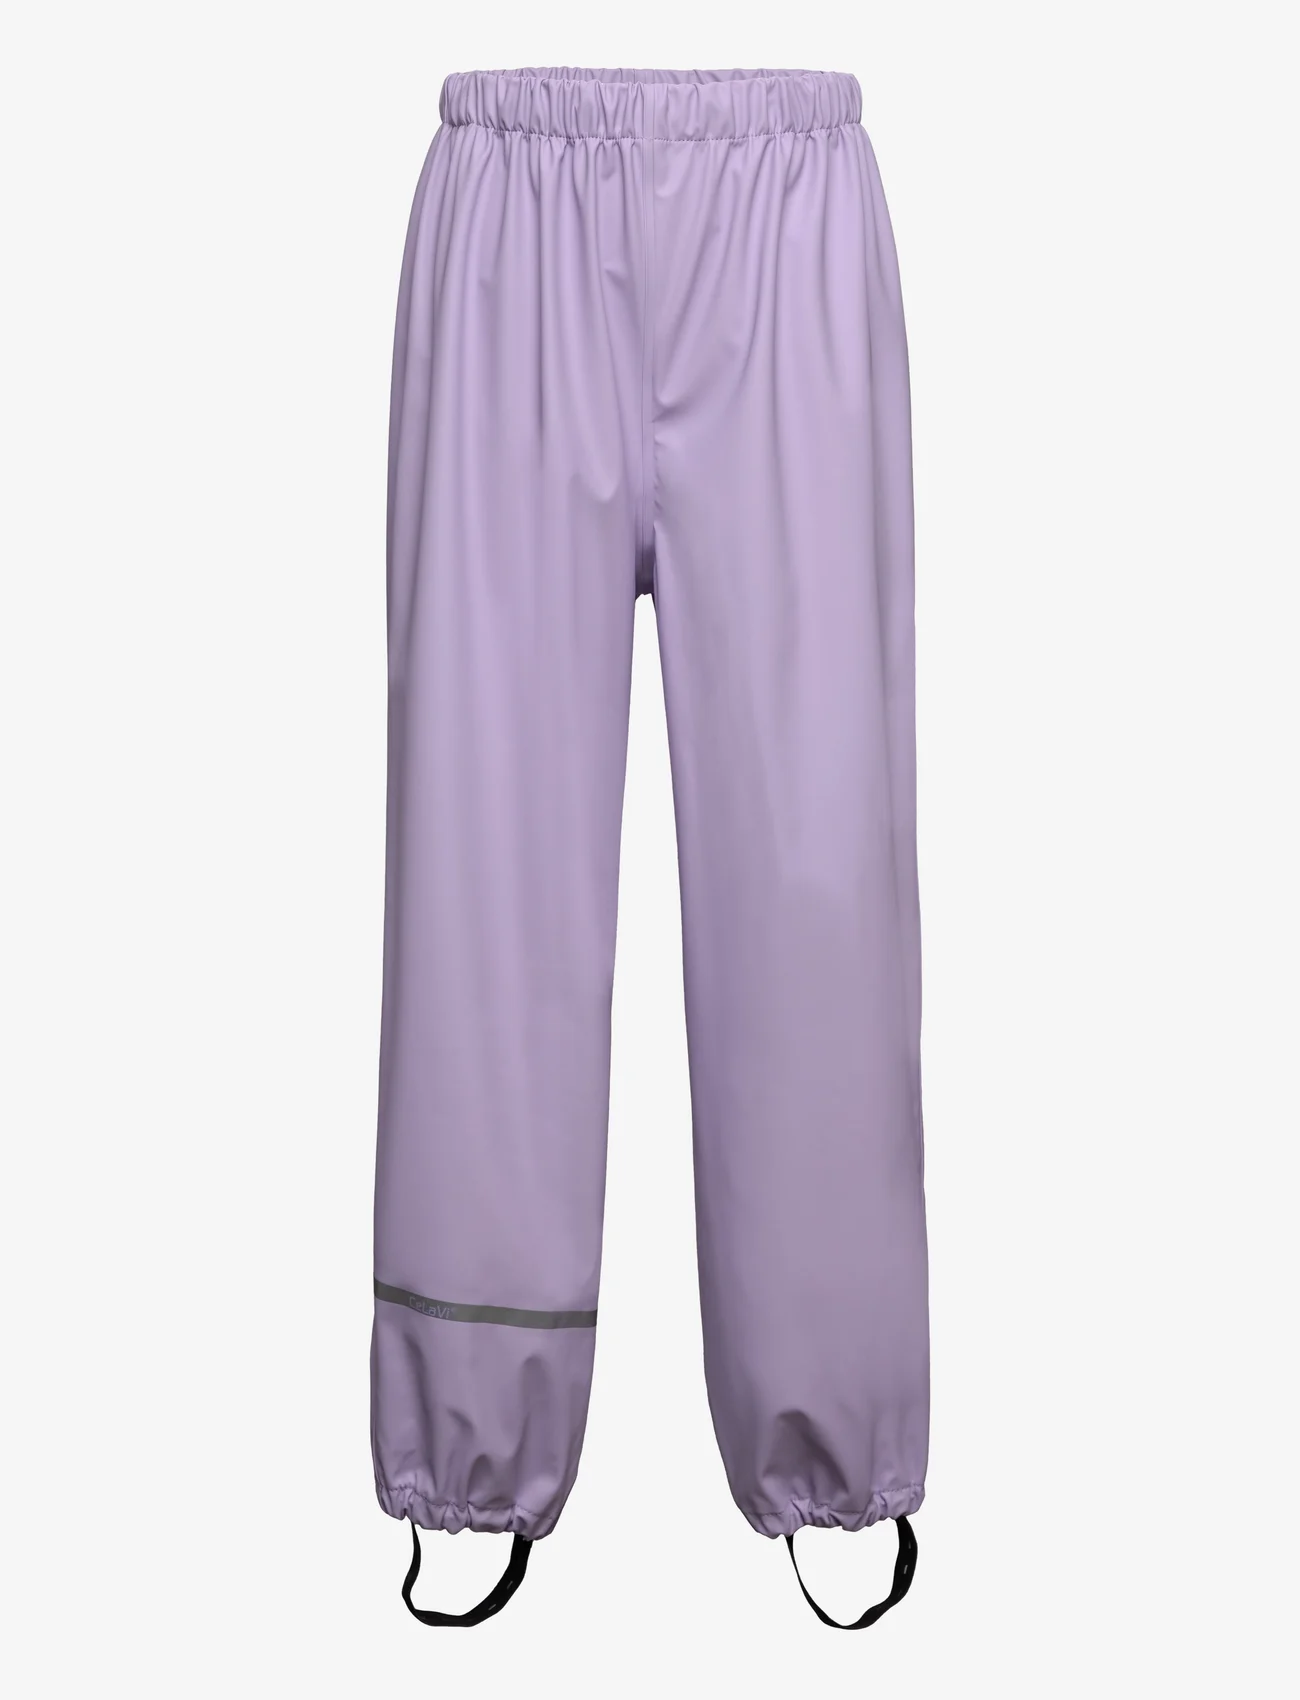 CeLaVi - Rainwear Pants - SOLID - mažiausios kainos - purple rose - 0